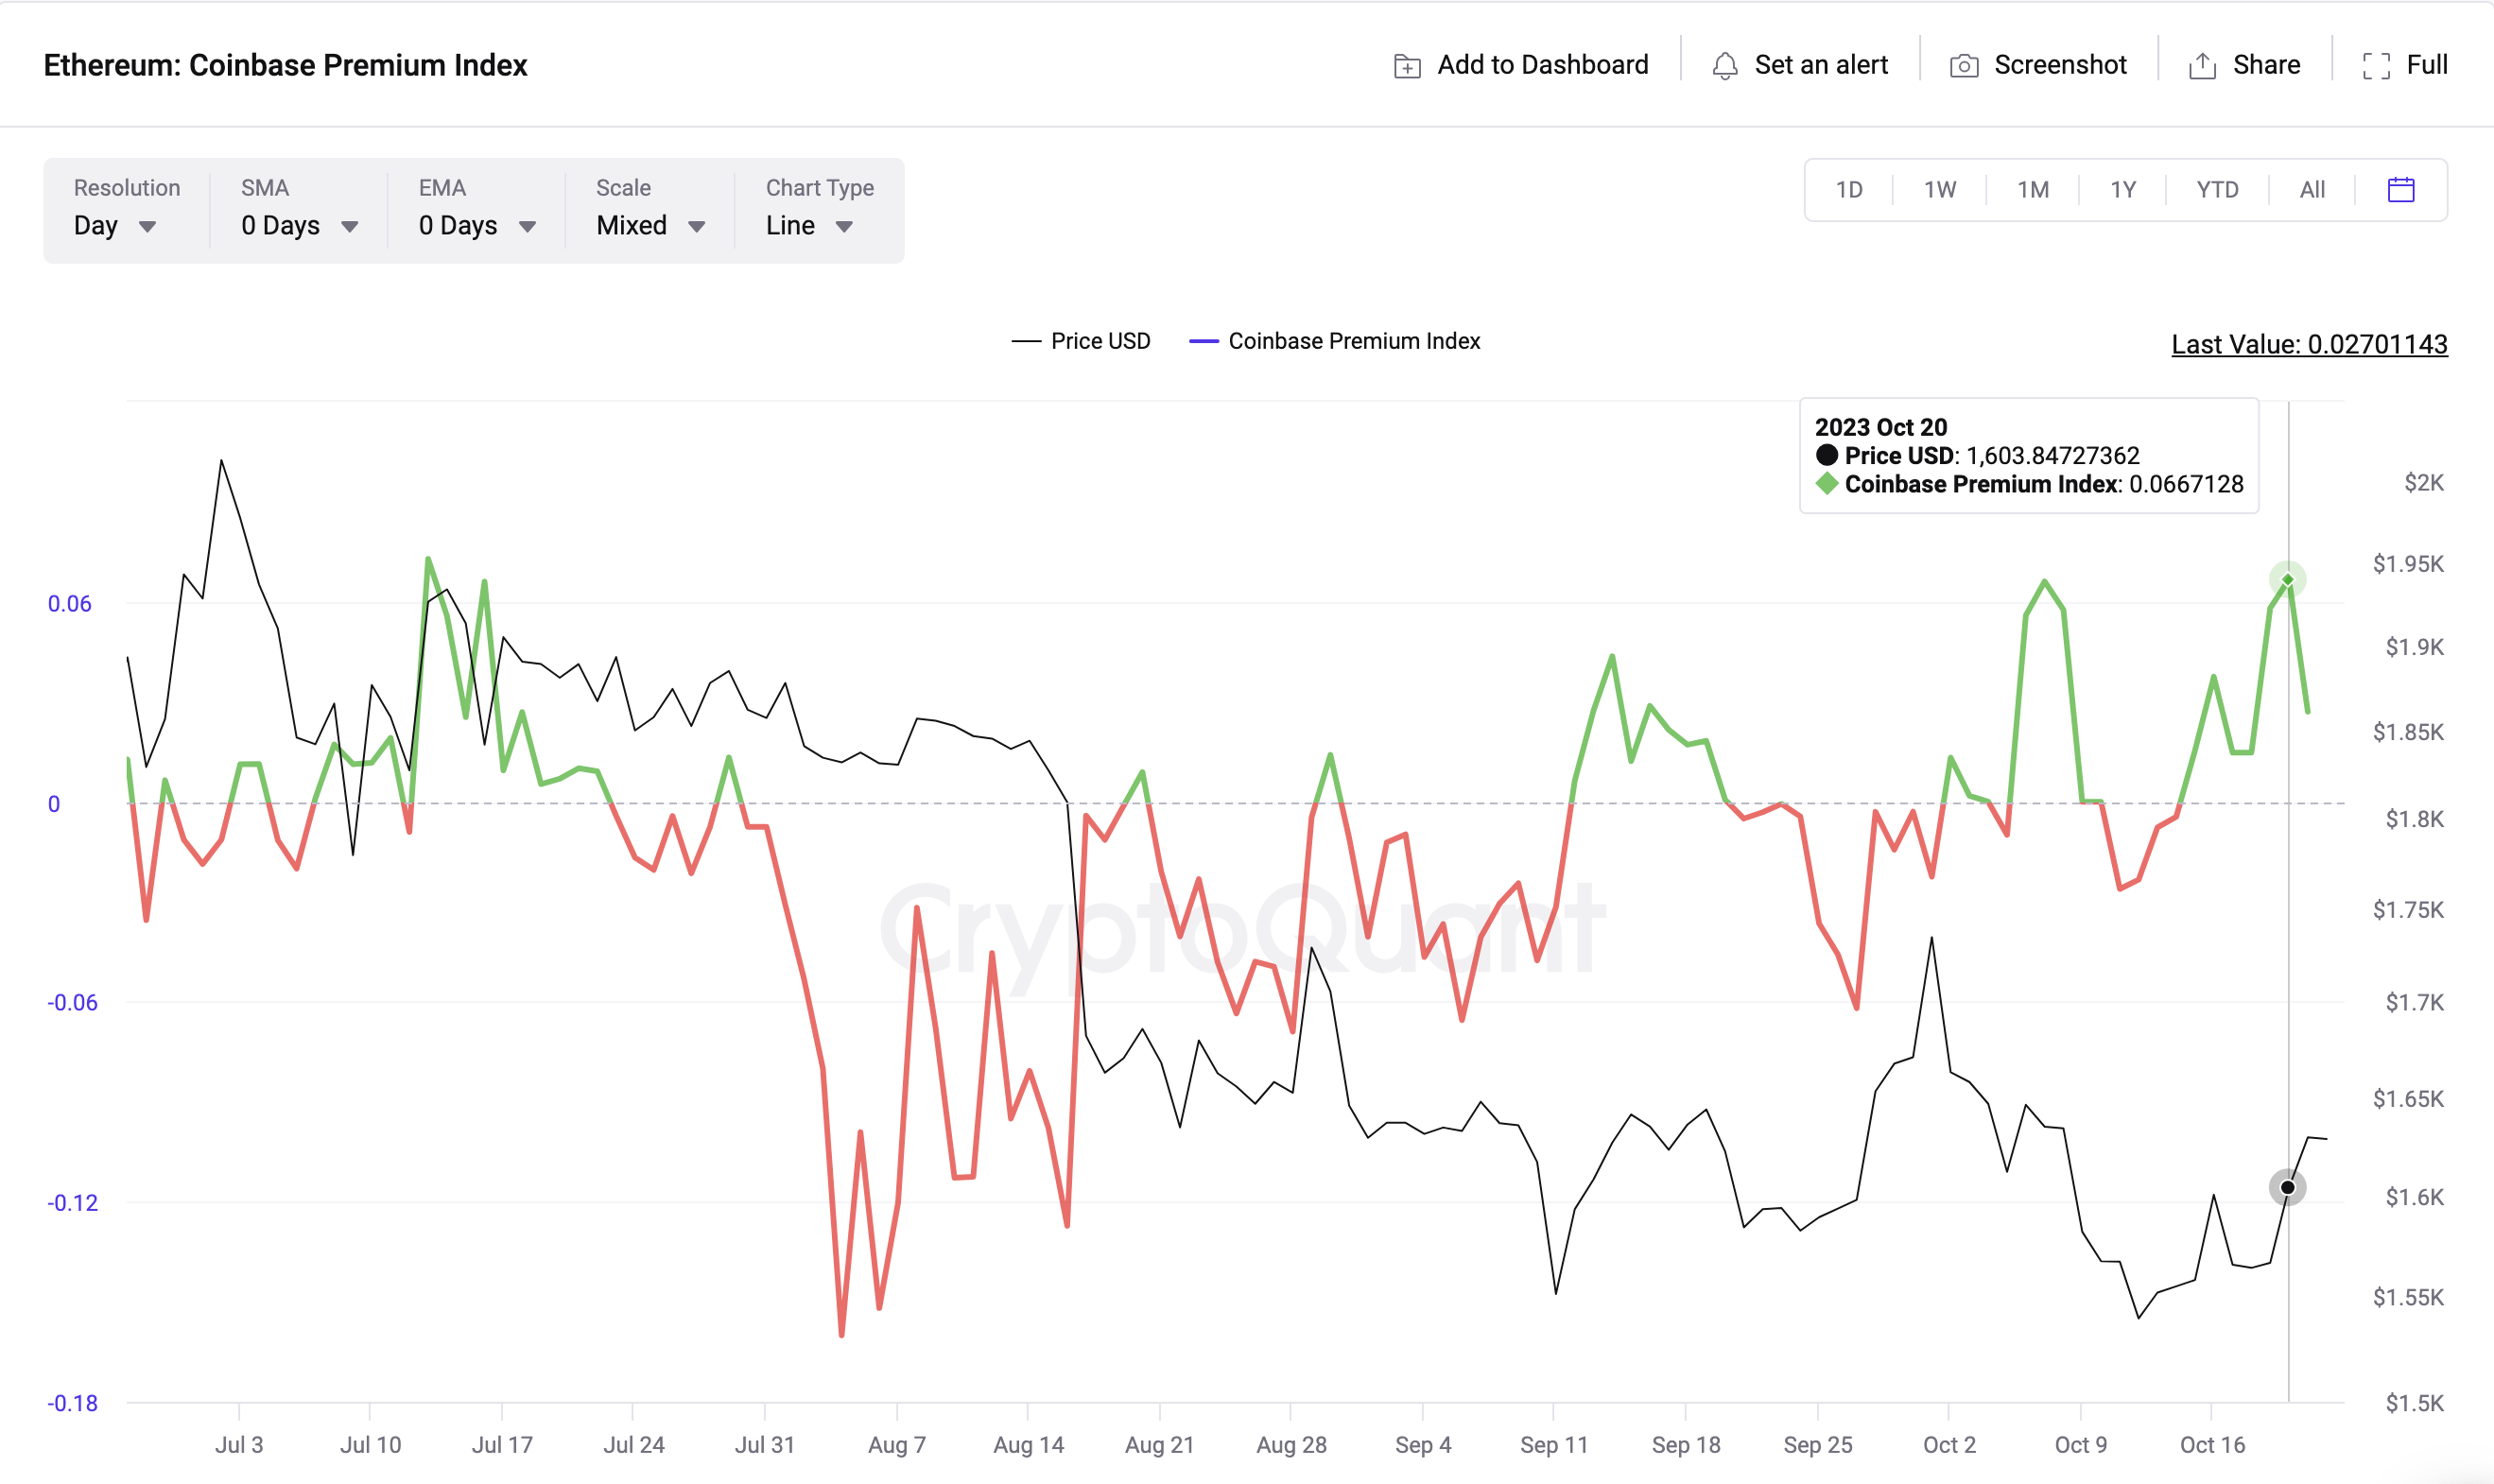 Ethereum (ETH) Coinbase Premium Index vs. Price 